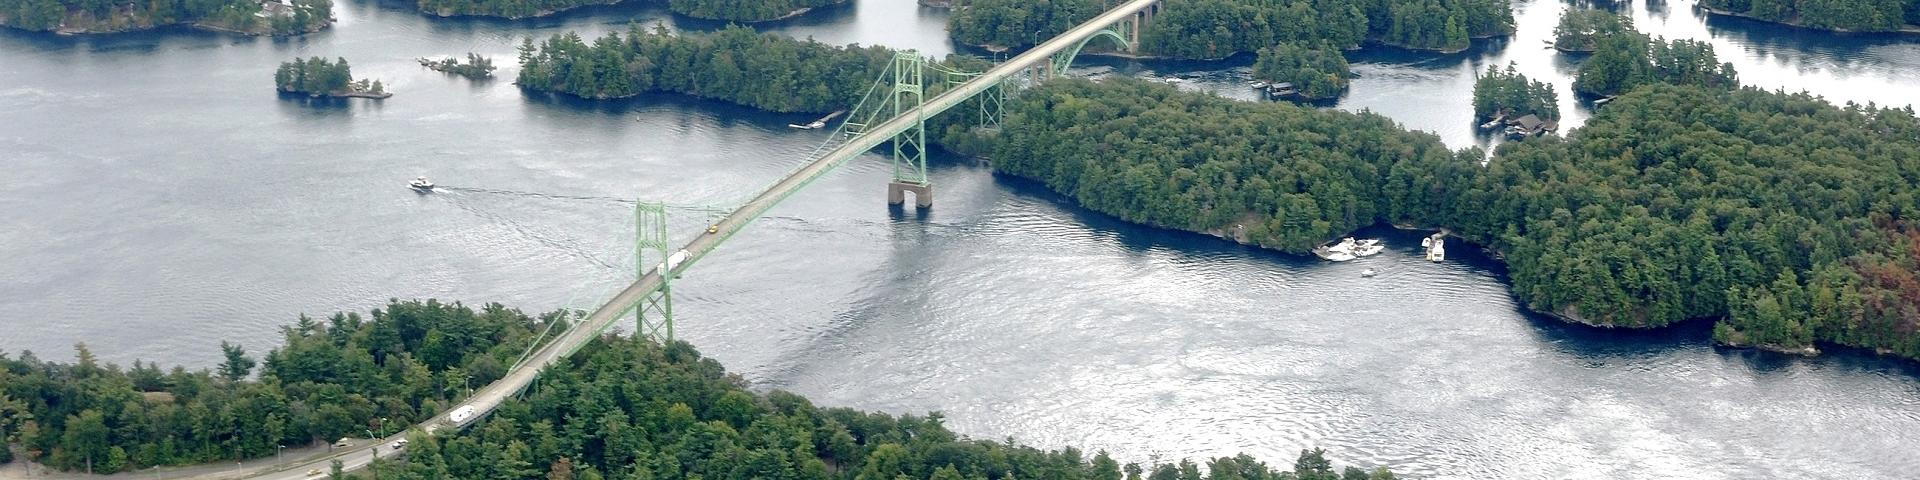 Aerial image of 1000 Island bridge, Ontario, Canada